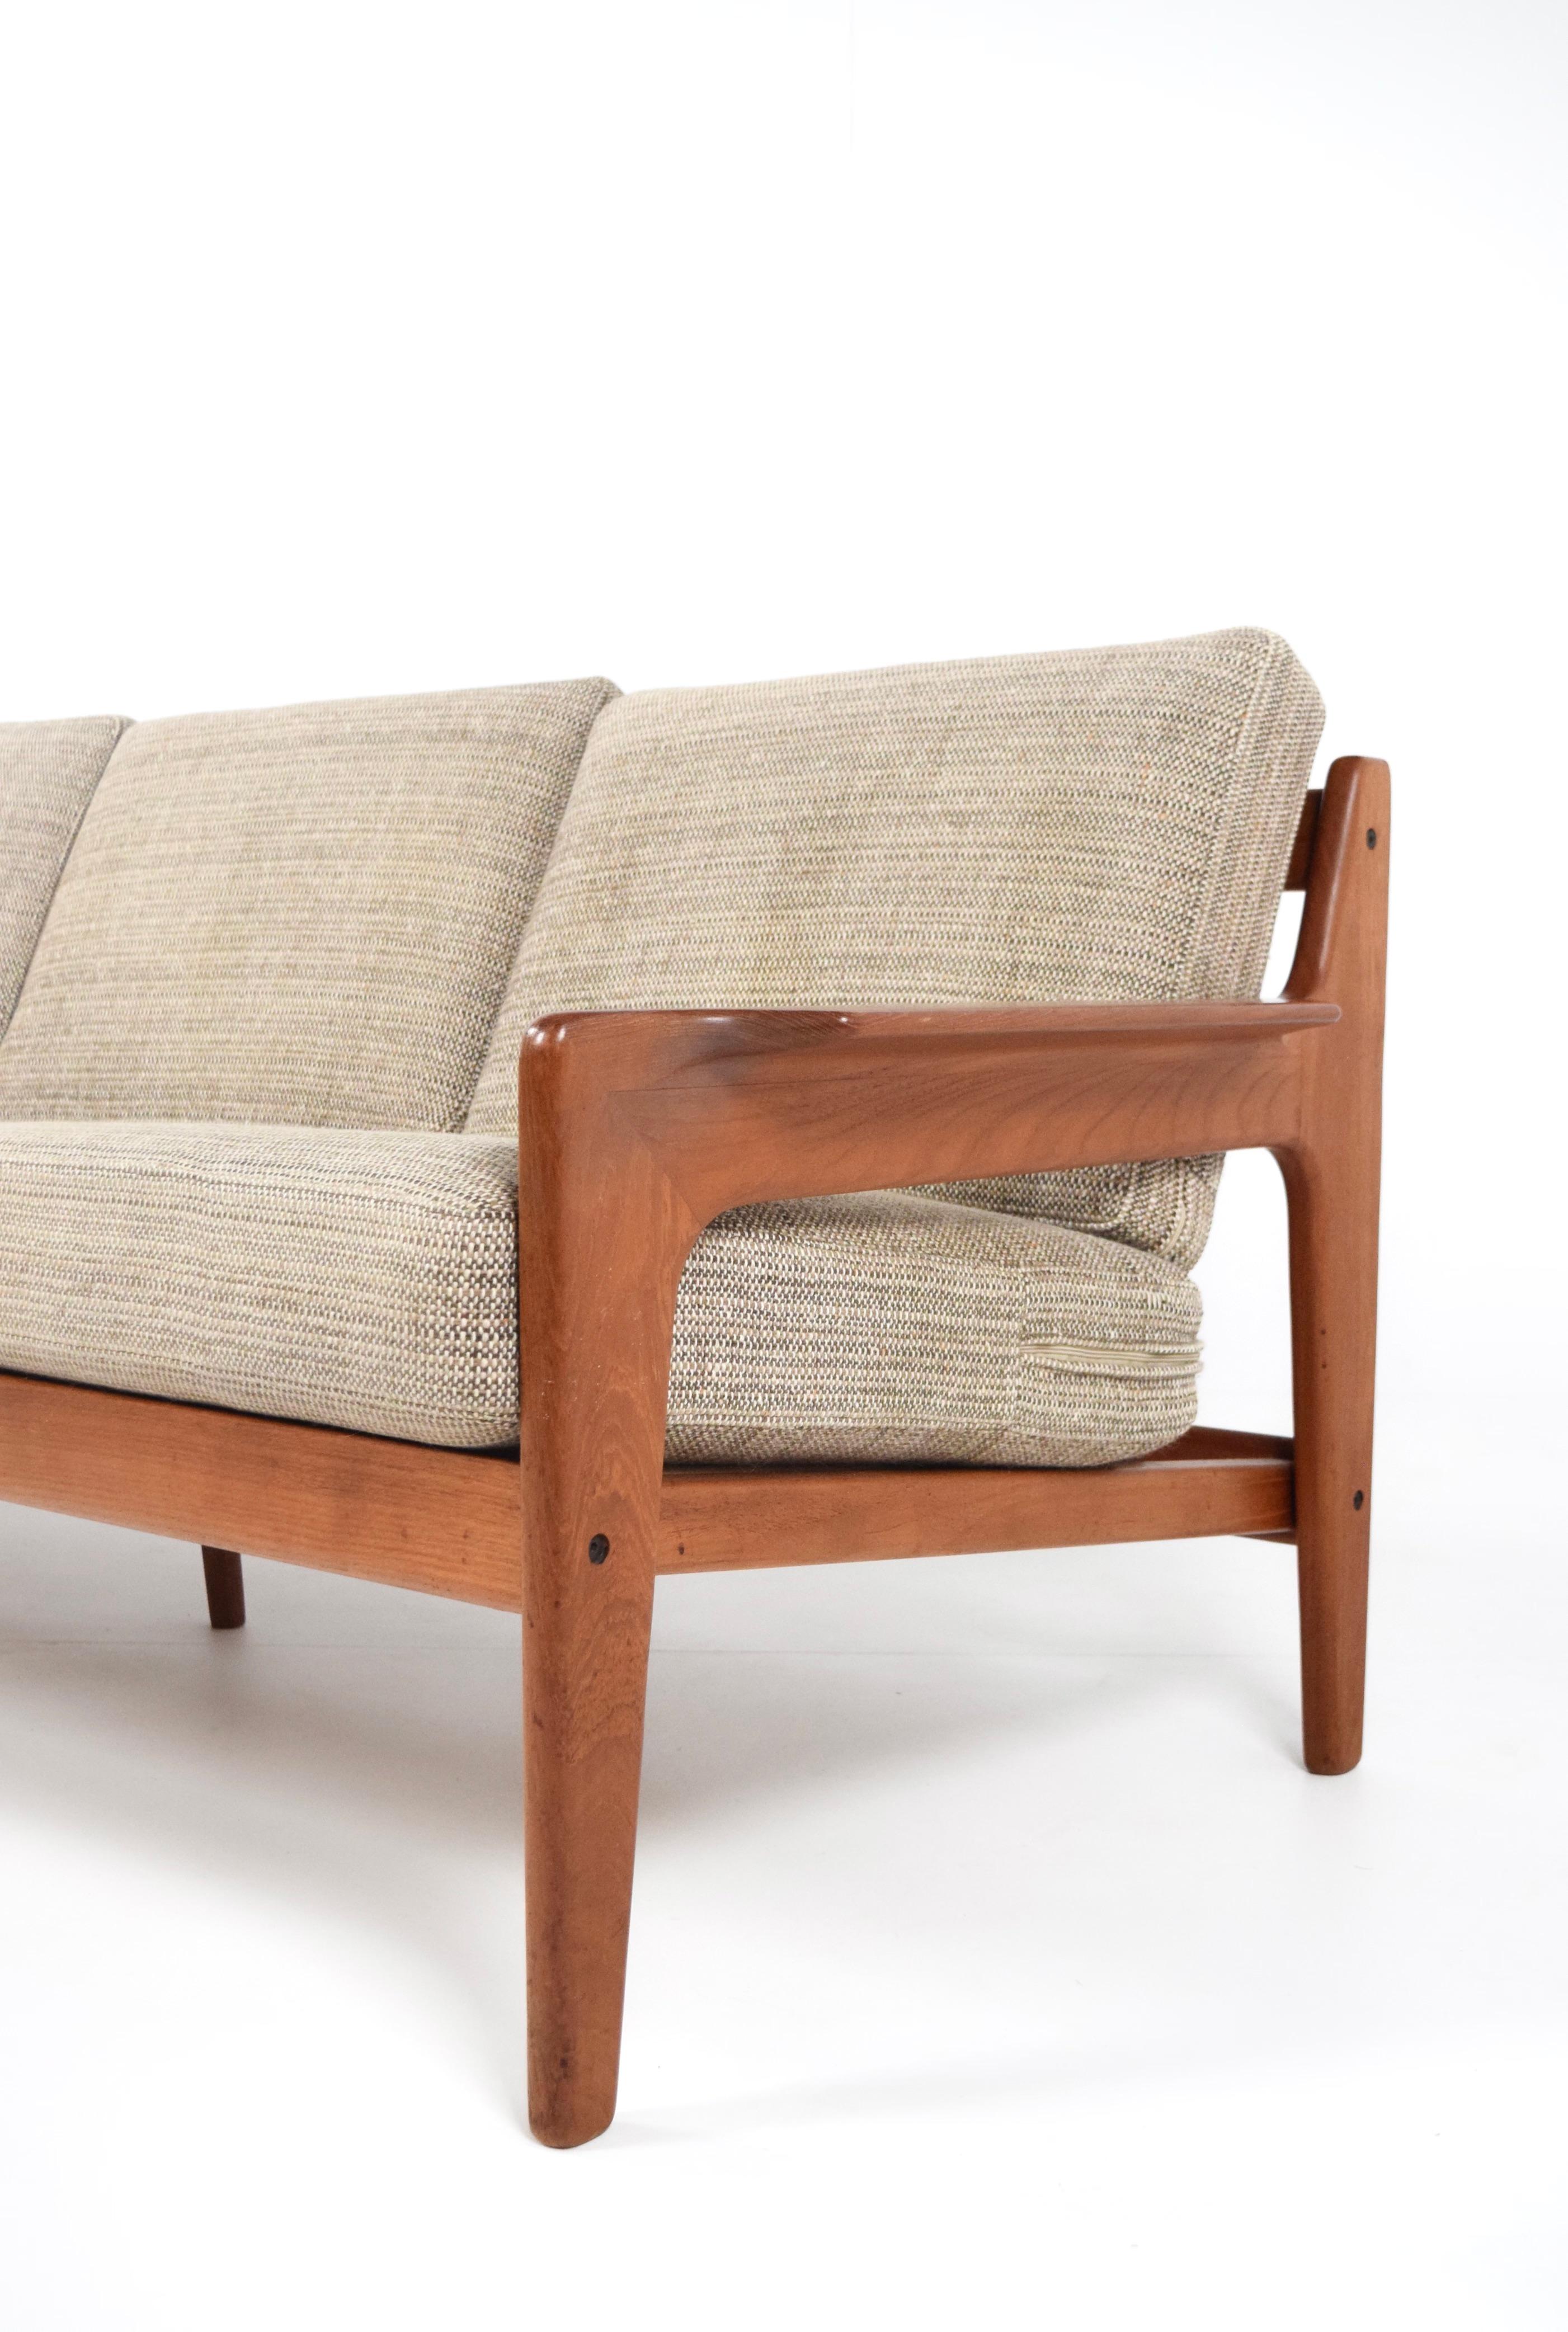 Arne Wahl Iversen Three-Seater Teak Sofa for Komfort, Denmark, 1960s 6